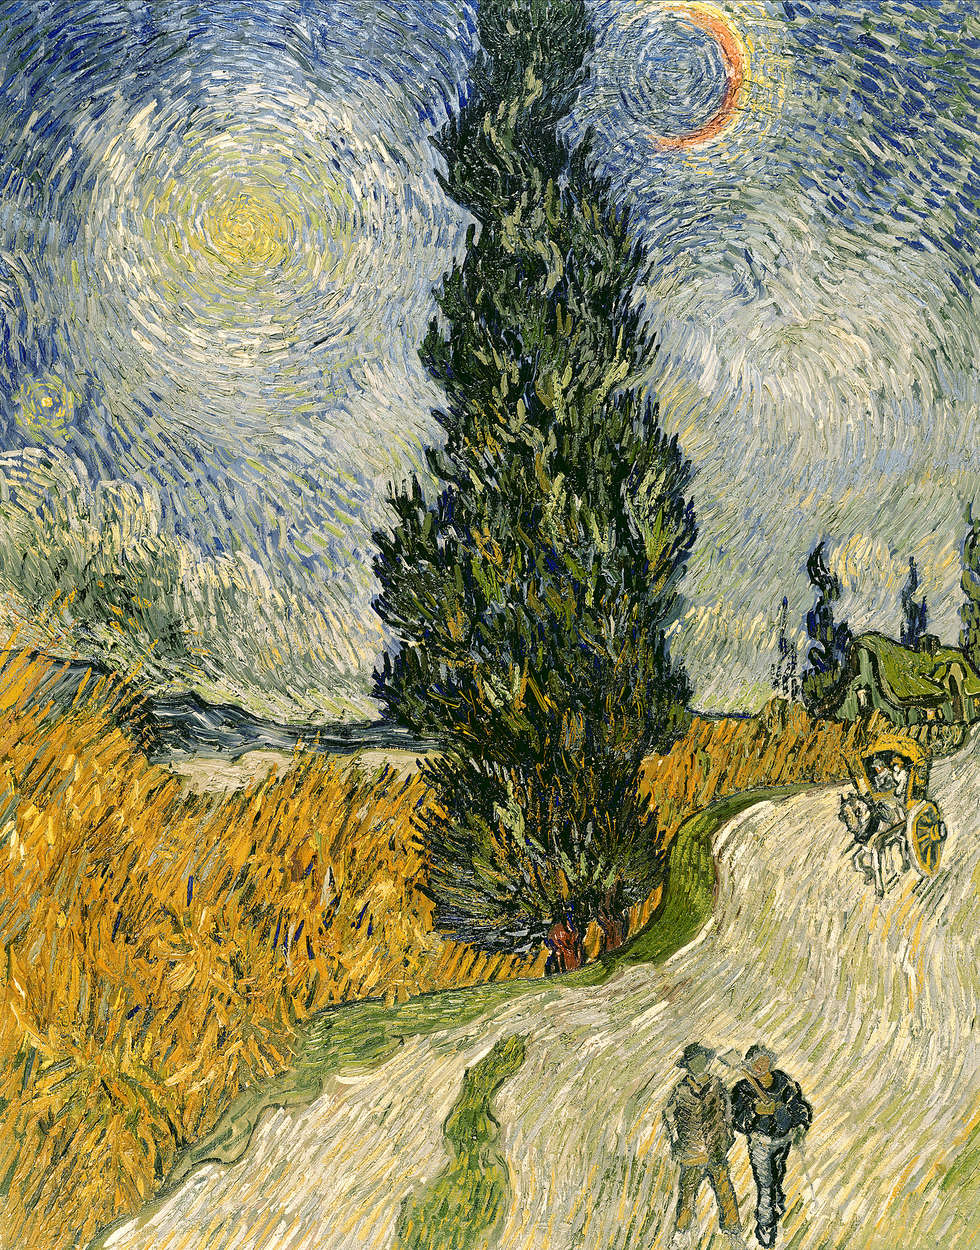             Strada con cipressi e stella" murale di Vincent van Gogh
        